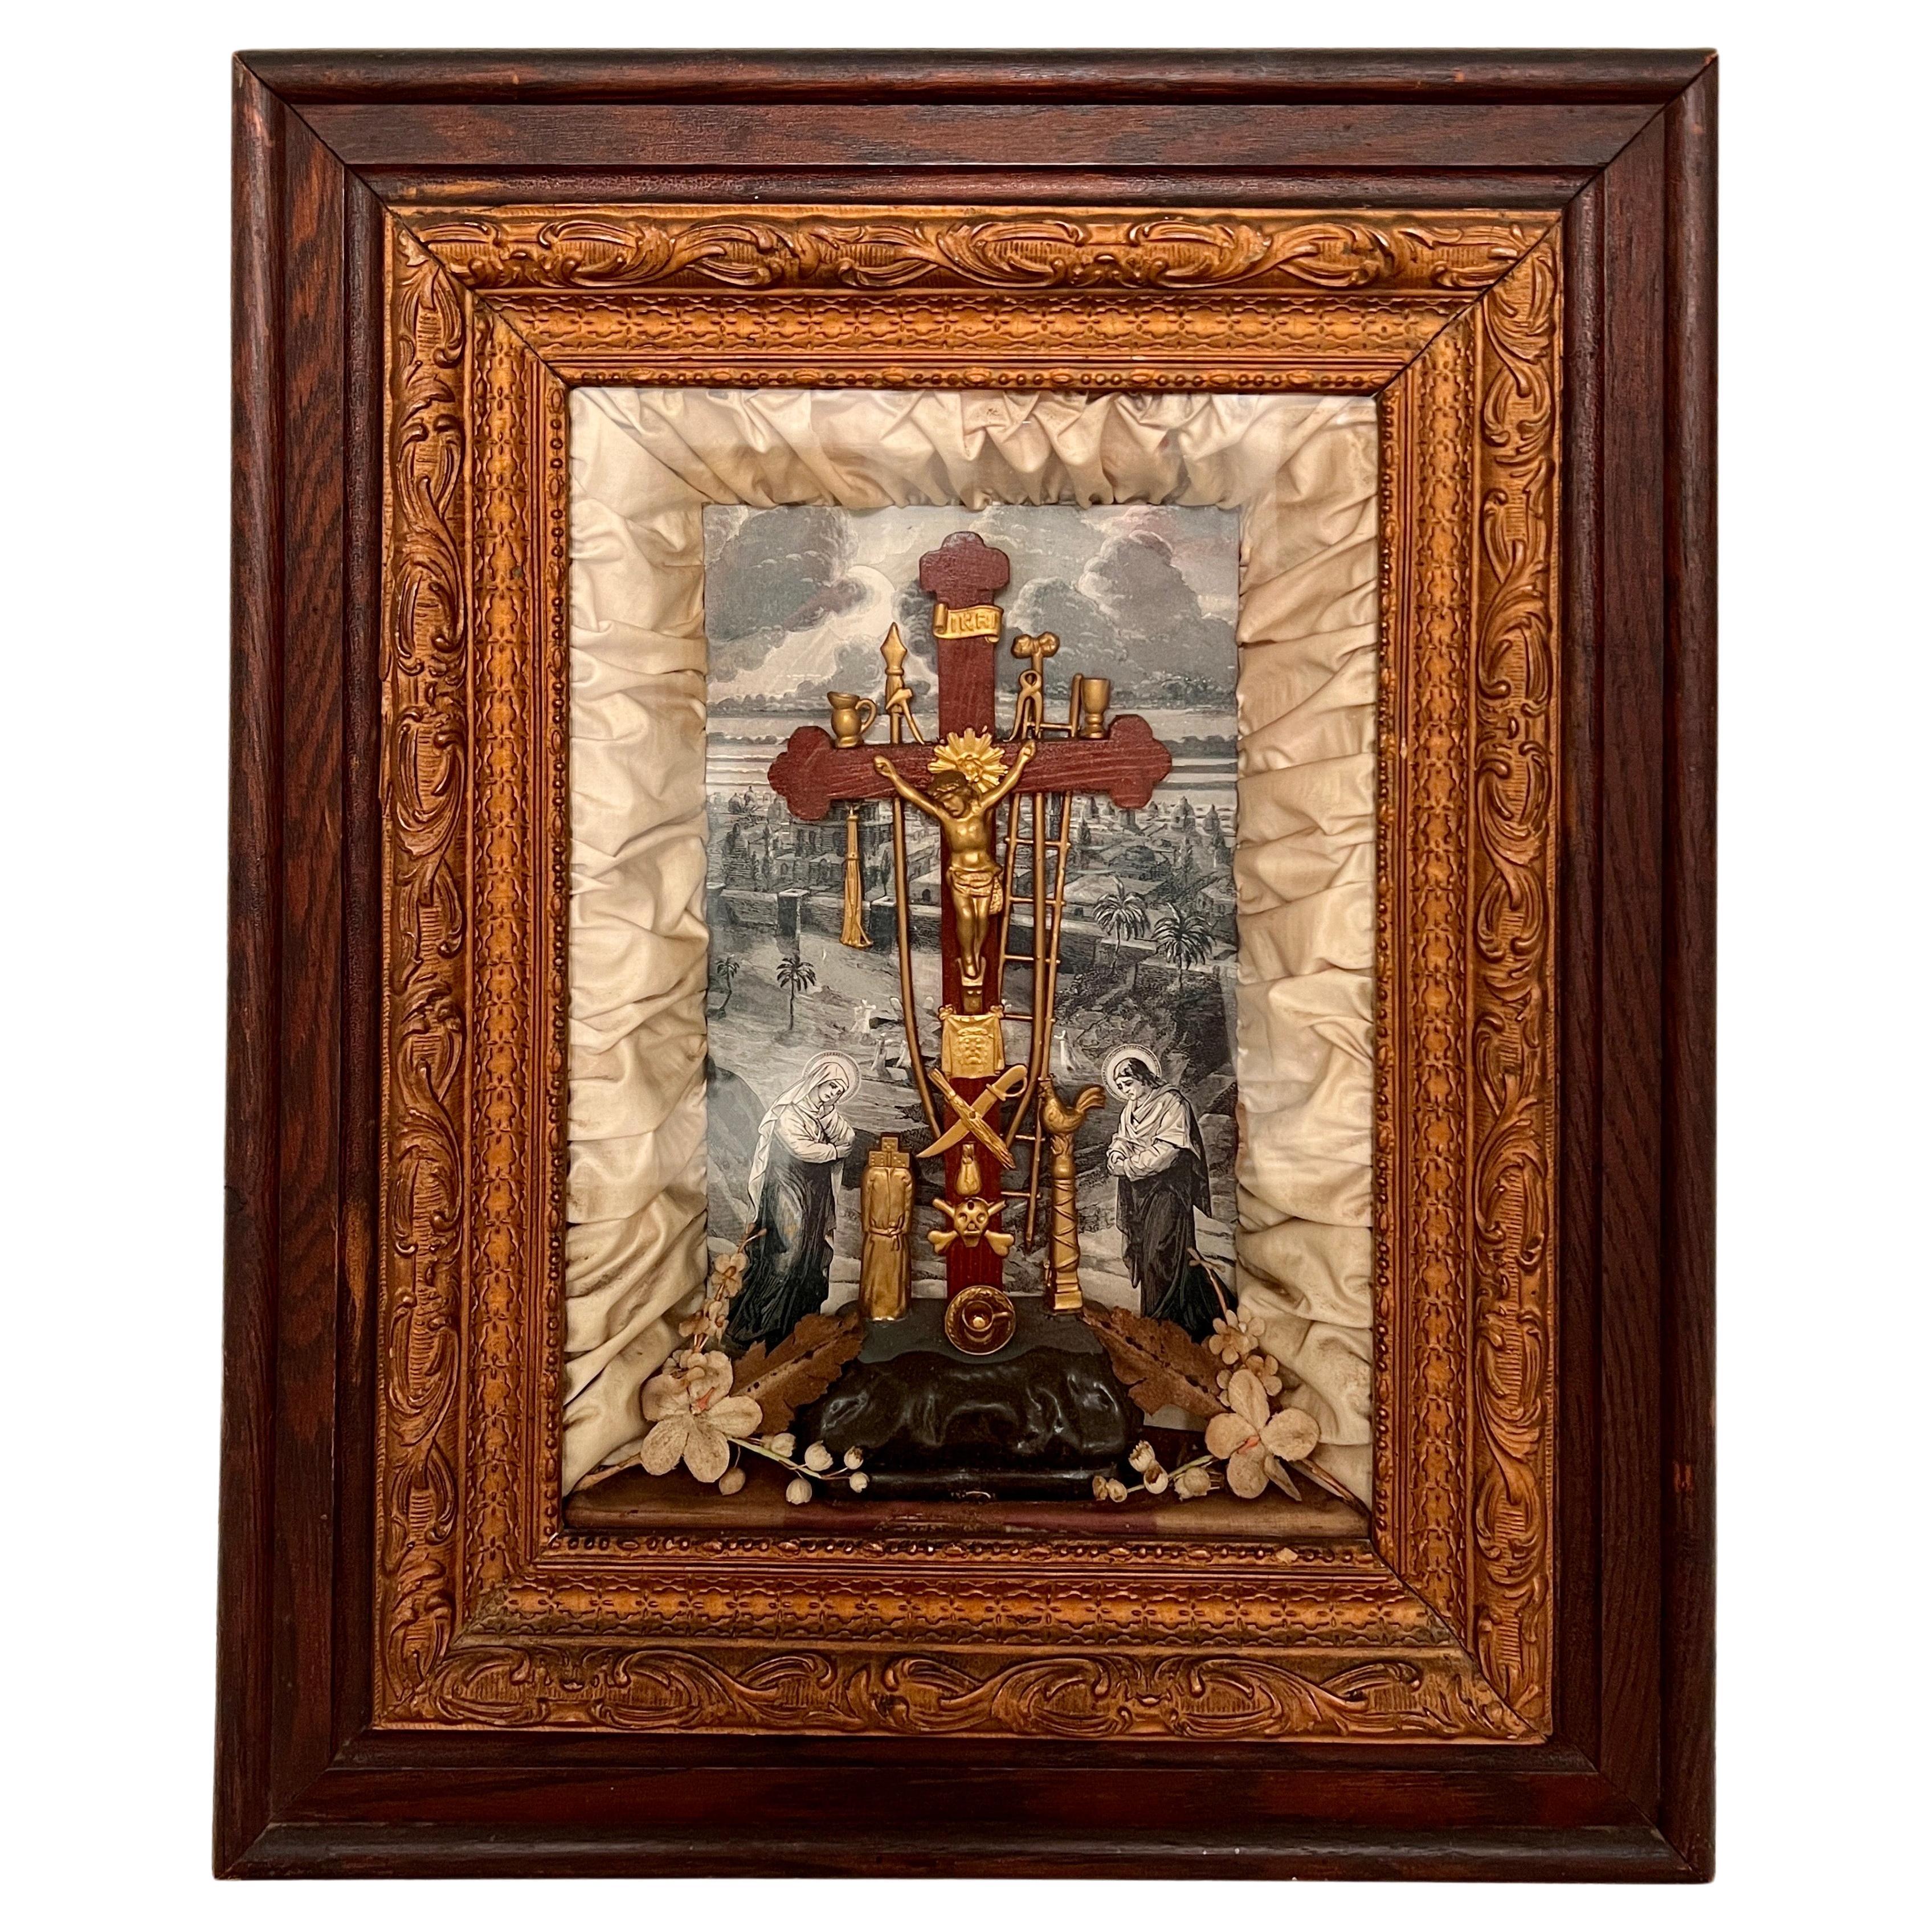 Boîte d'ombres victorienne ancienne avec scène de crucifix religieux, vers 1850